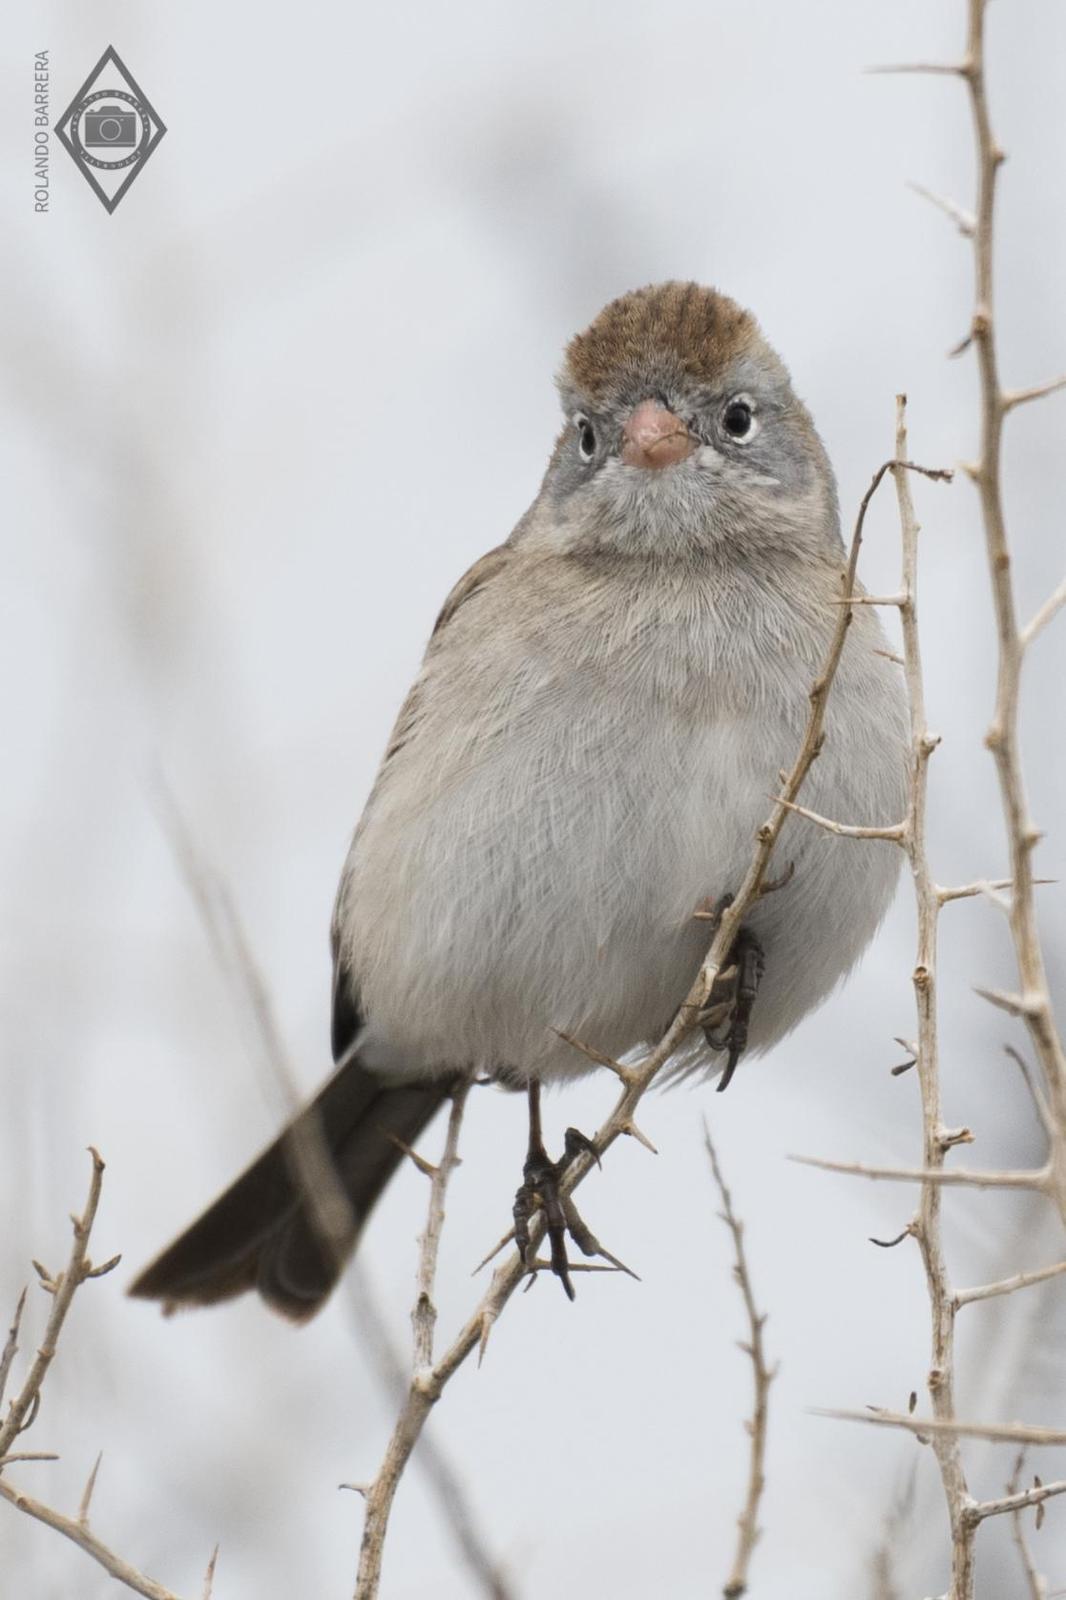 Worthen's Sparrow Photo by Rolando Barrera